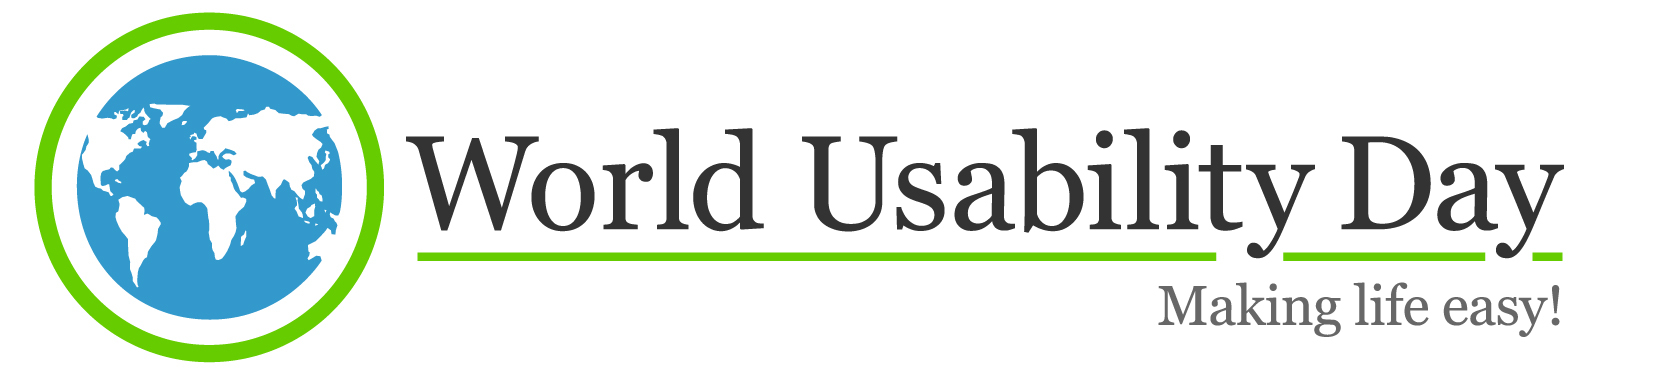 World Usability Day logo